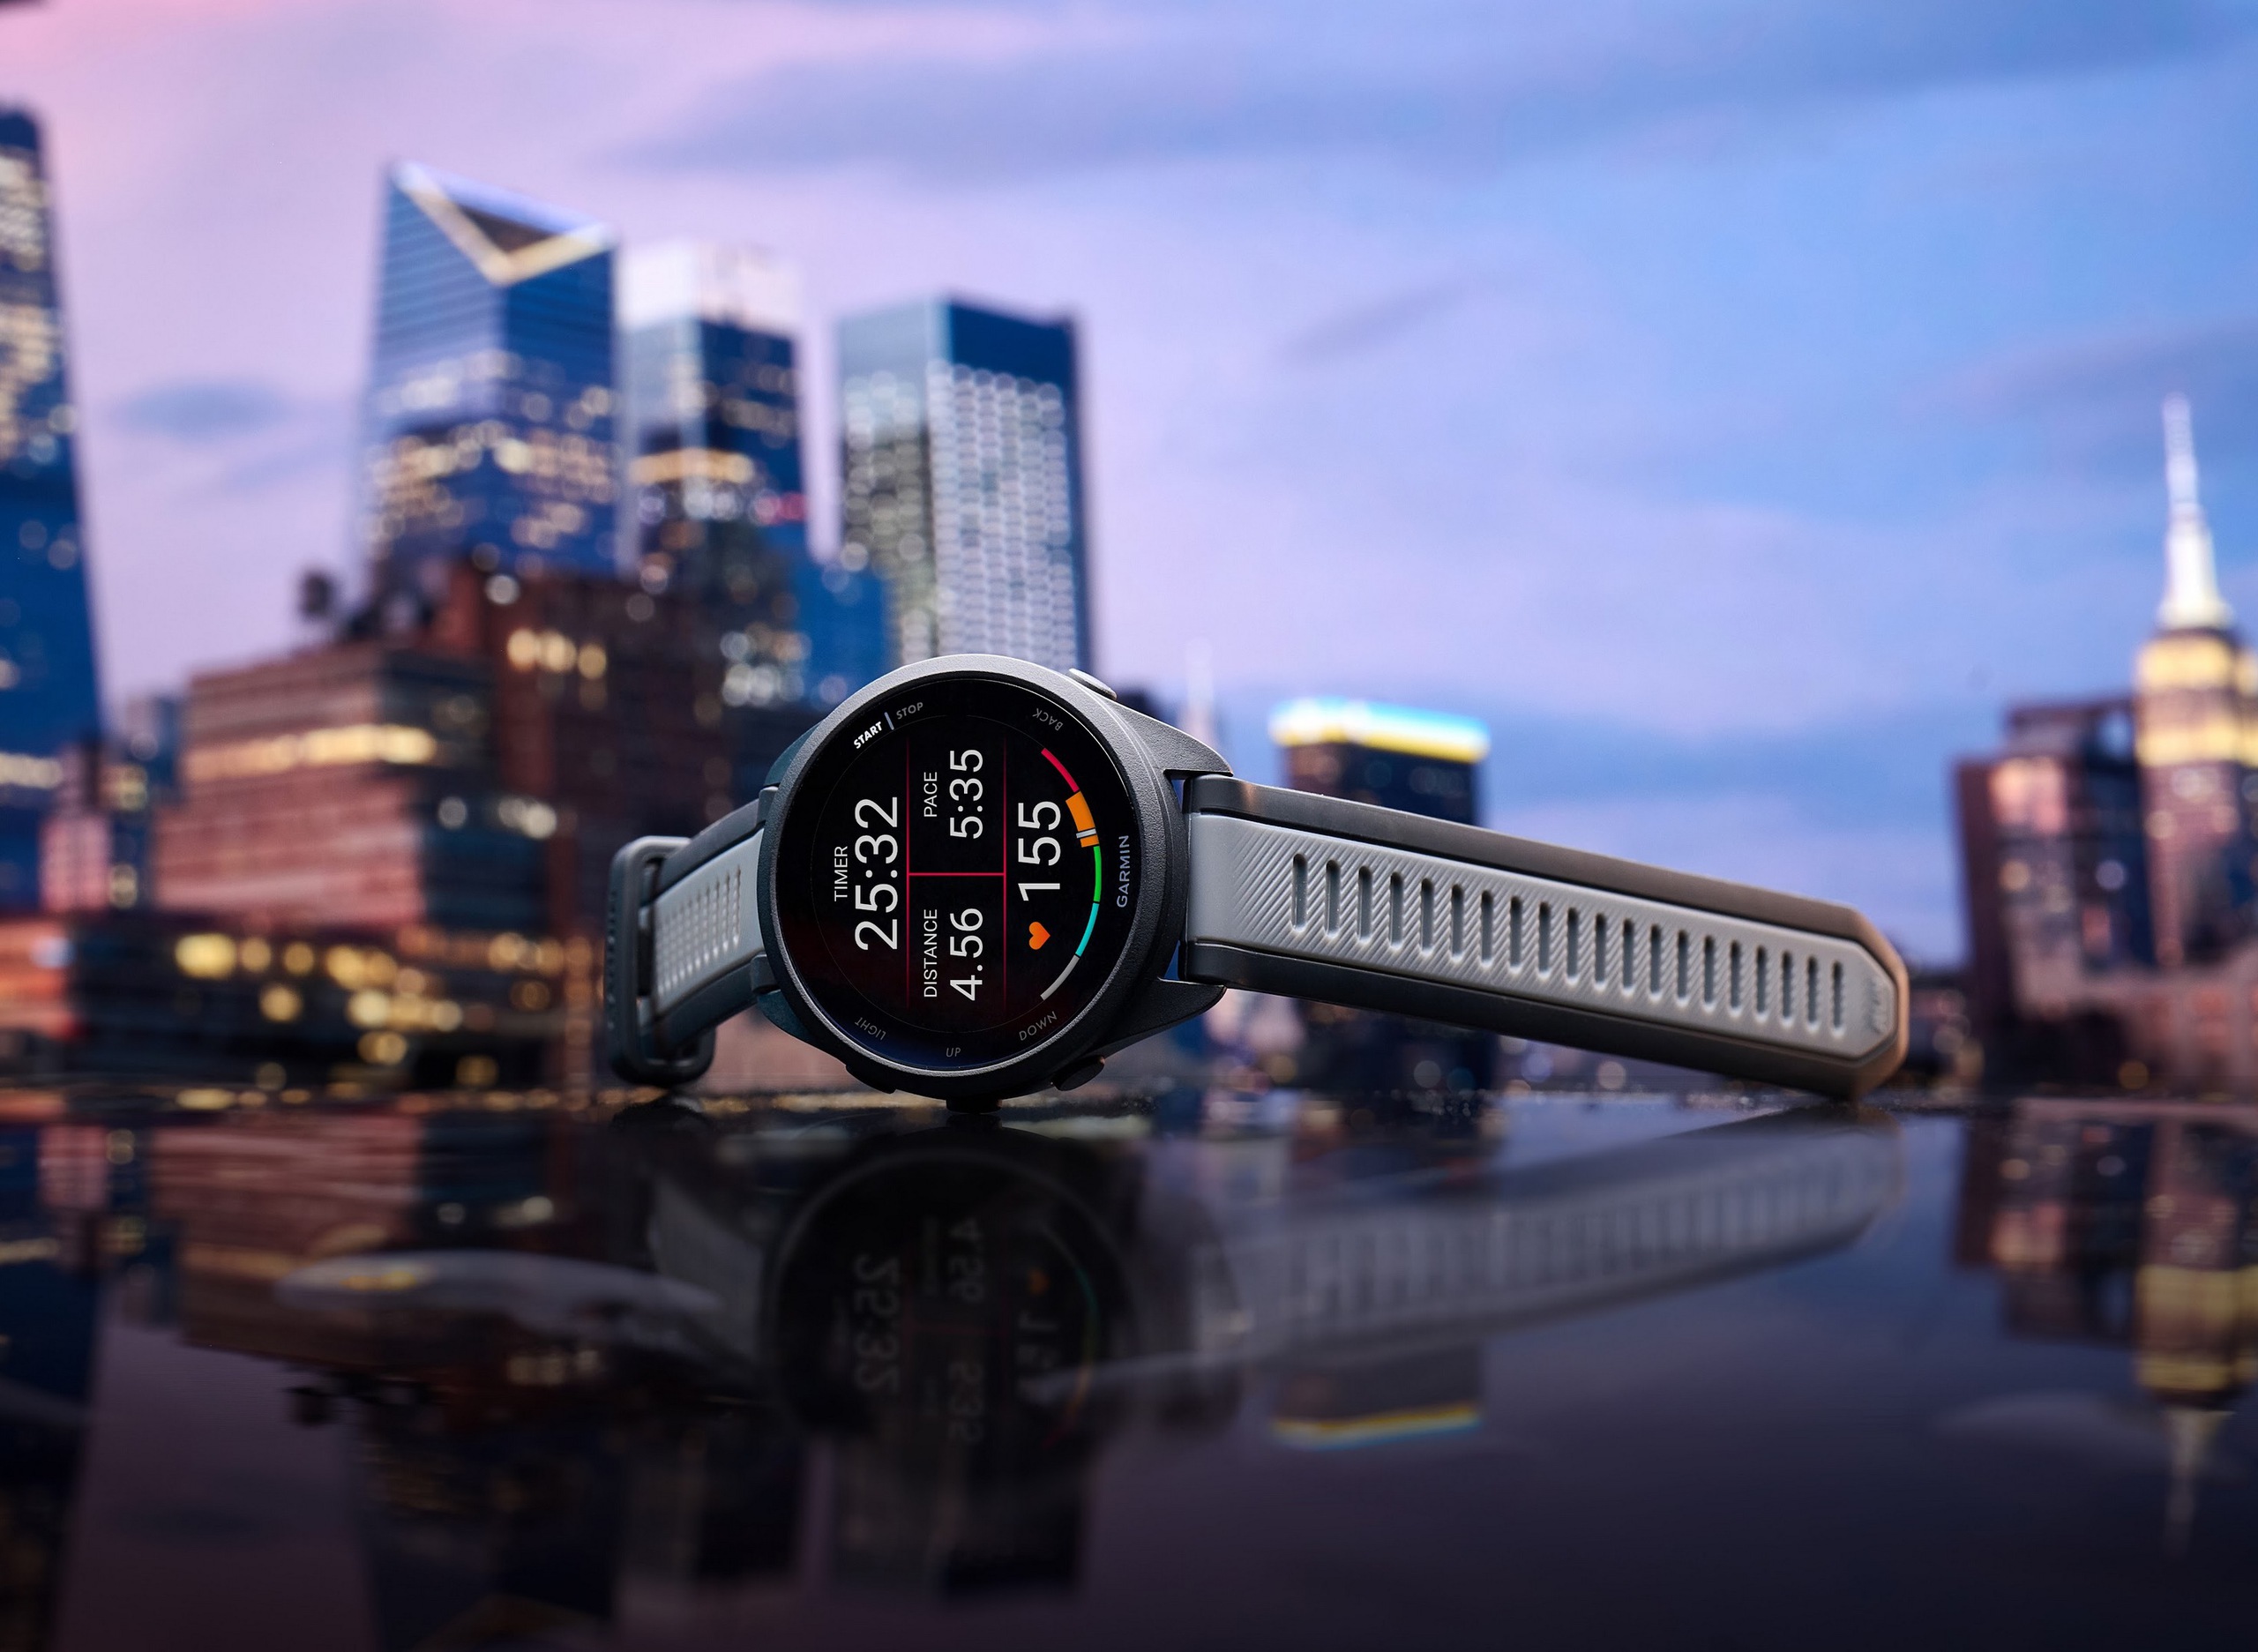 Garmin công bố giải chạy Longbien Garmin Run kèm bộ đôi đồng hồ Forerunner 165 Series và cảm biến nhịp tim HRM-Fit mới- Ảnh 2.